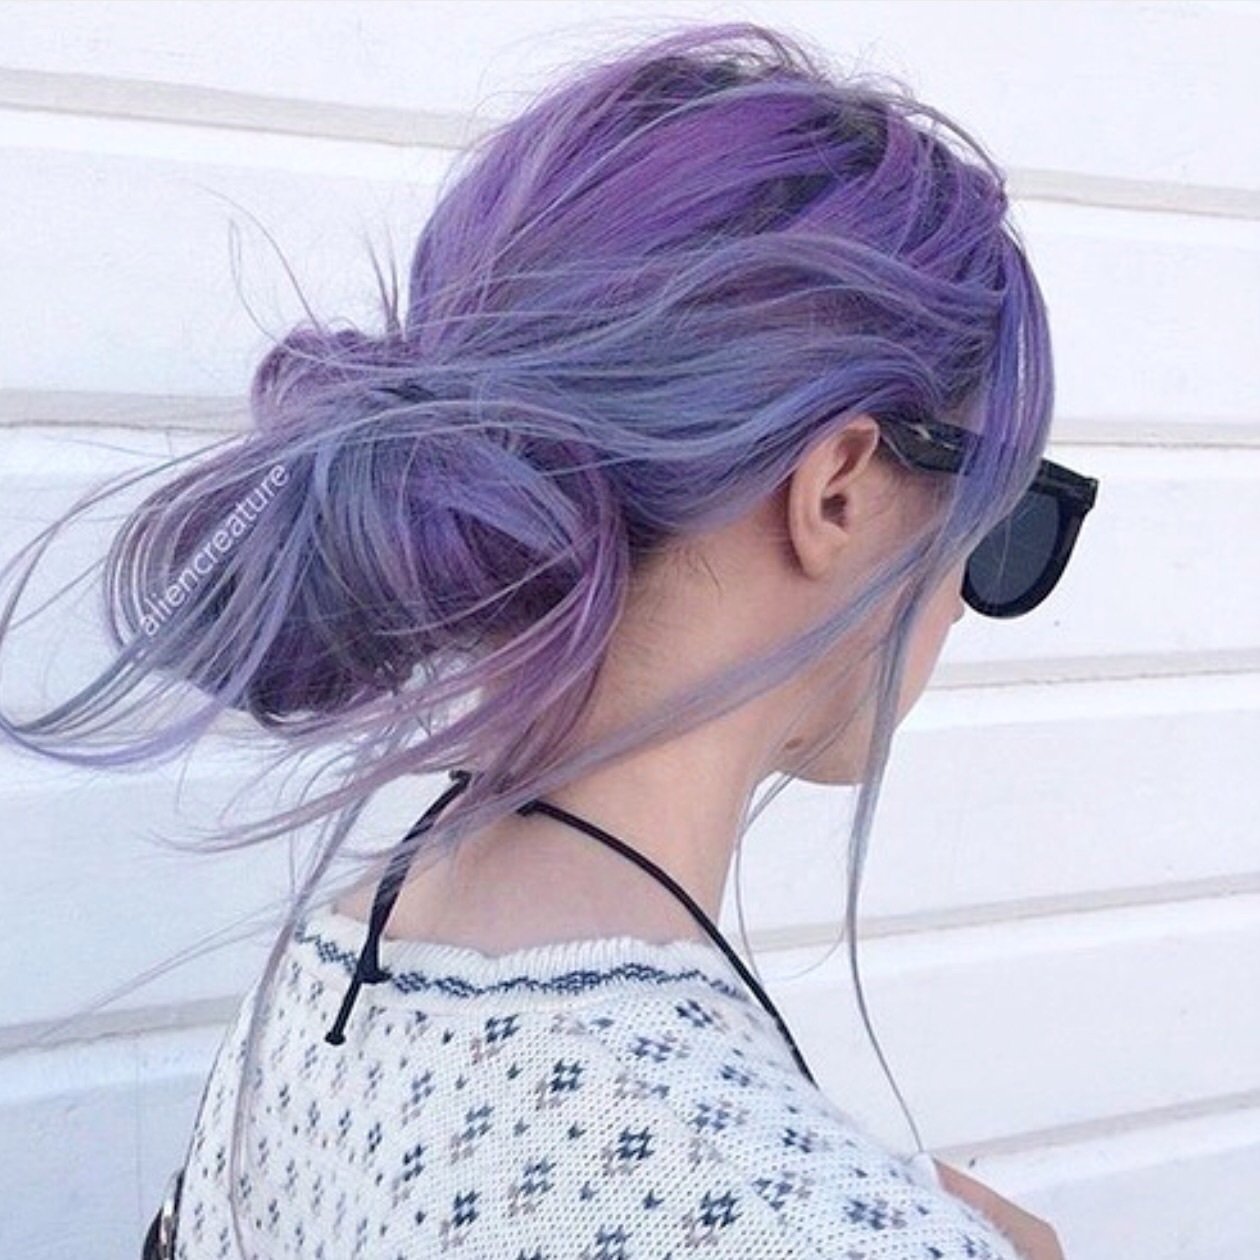 Фото голой жопы девушки с фиолетовыми волосами